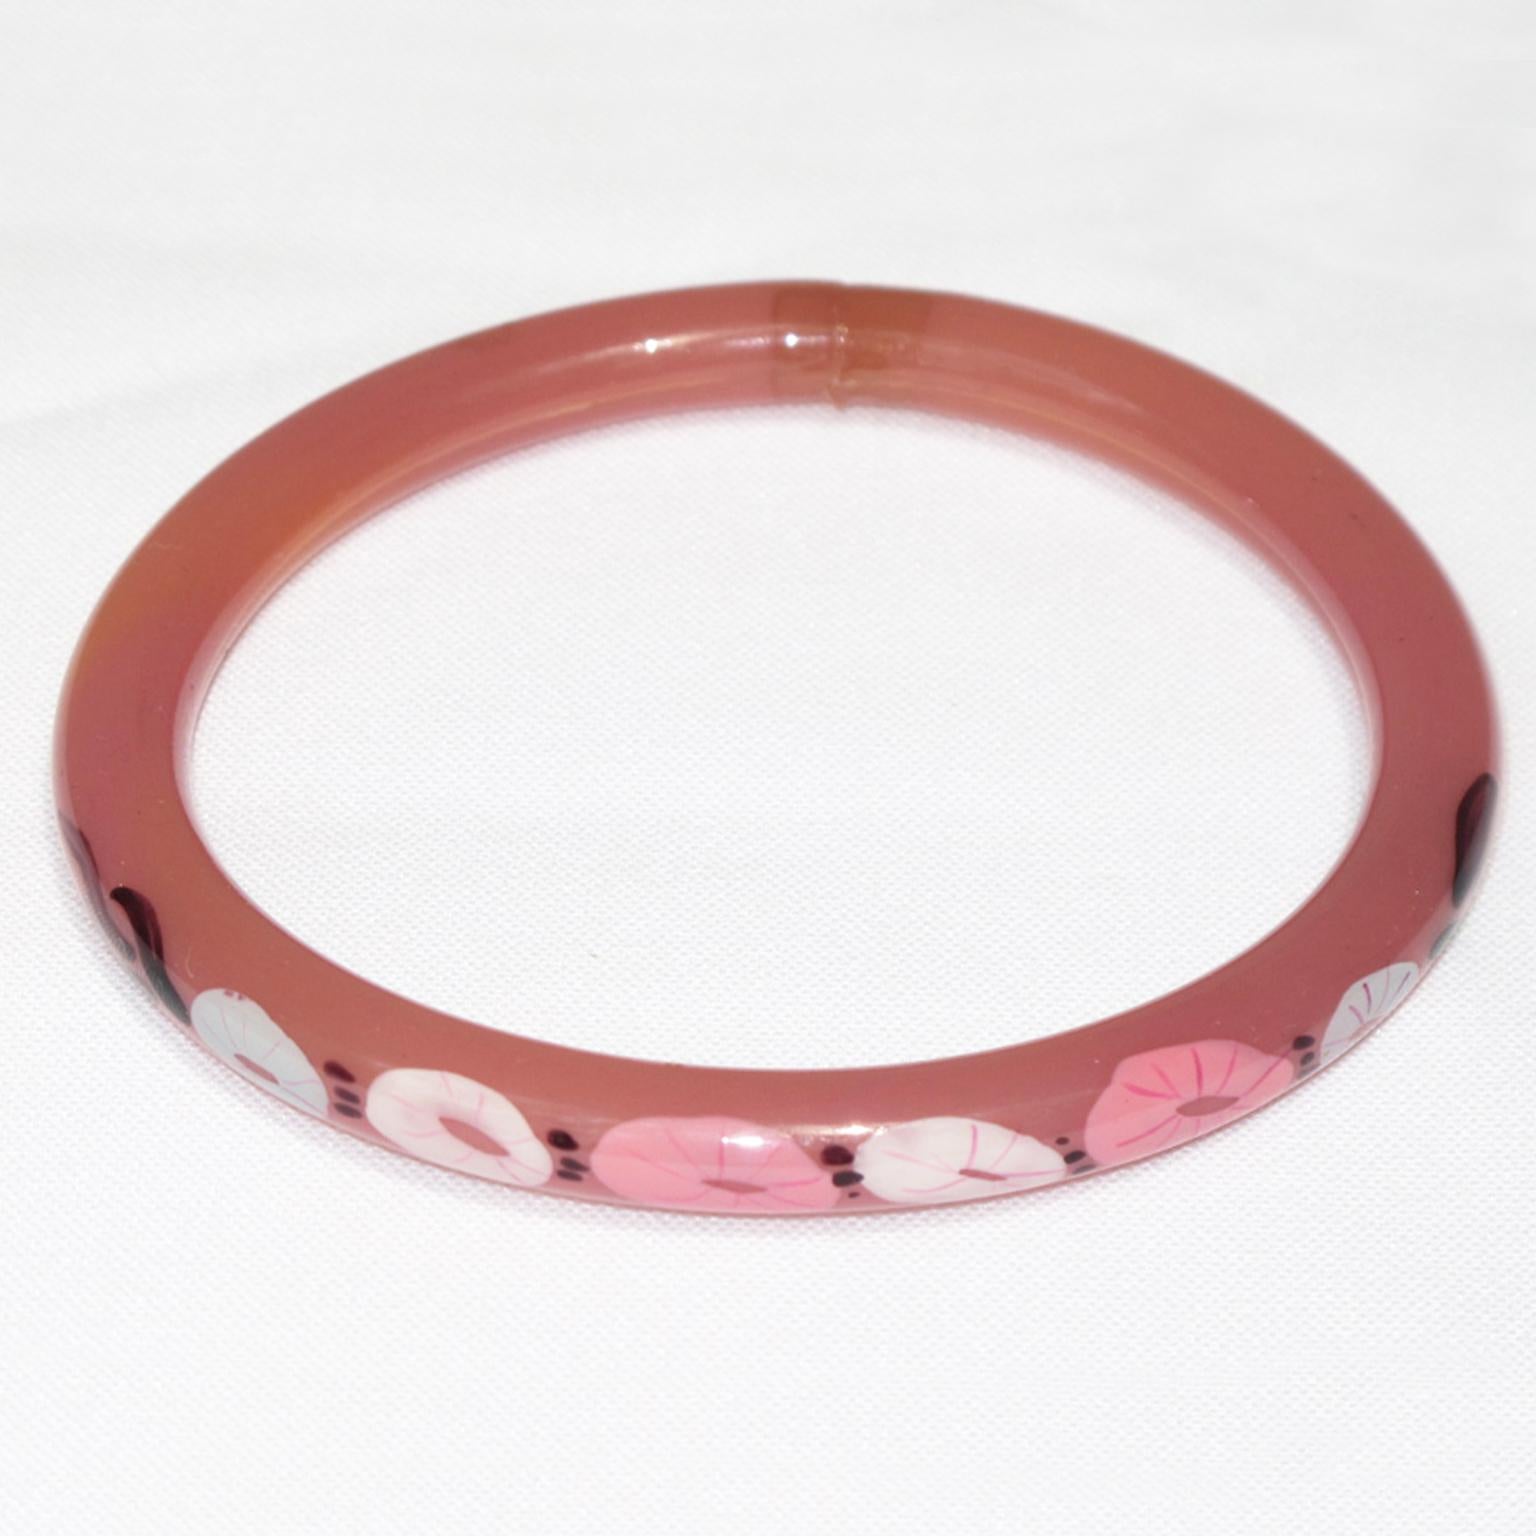 Ce joli bracelet en celluloïd Art déco français des années 1920 présente une forme de tube creux léger avec un motif floral sur un côté du bracelet. 
La technique du bracelet creux est une technique ancienne appliquée à la bijouterie au tournant du